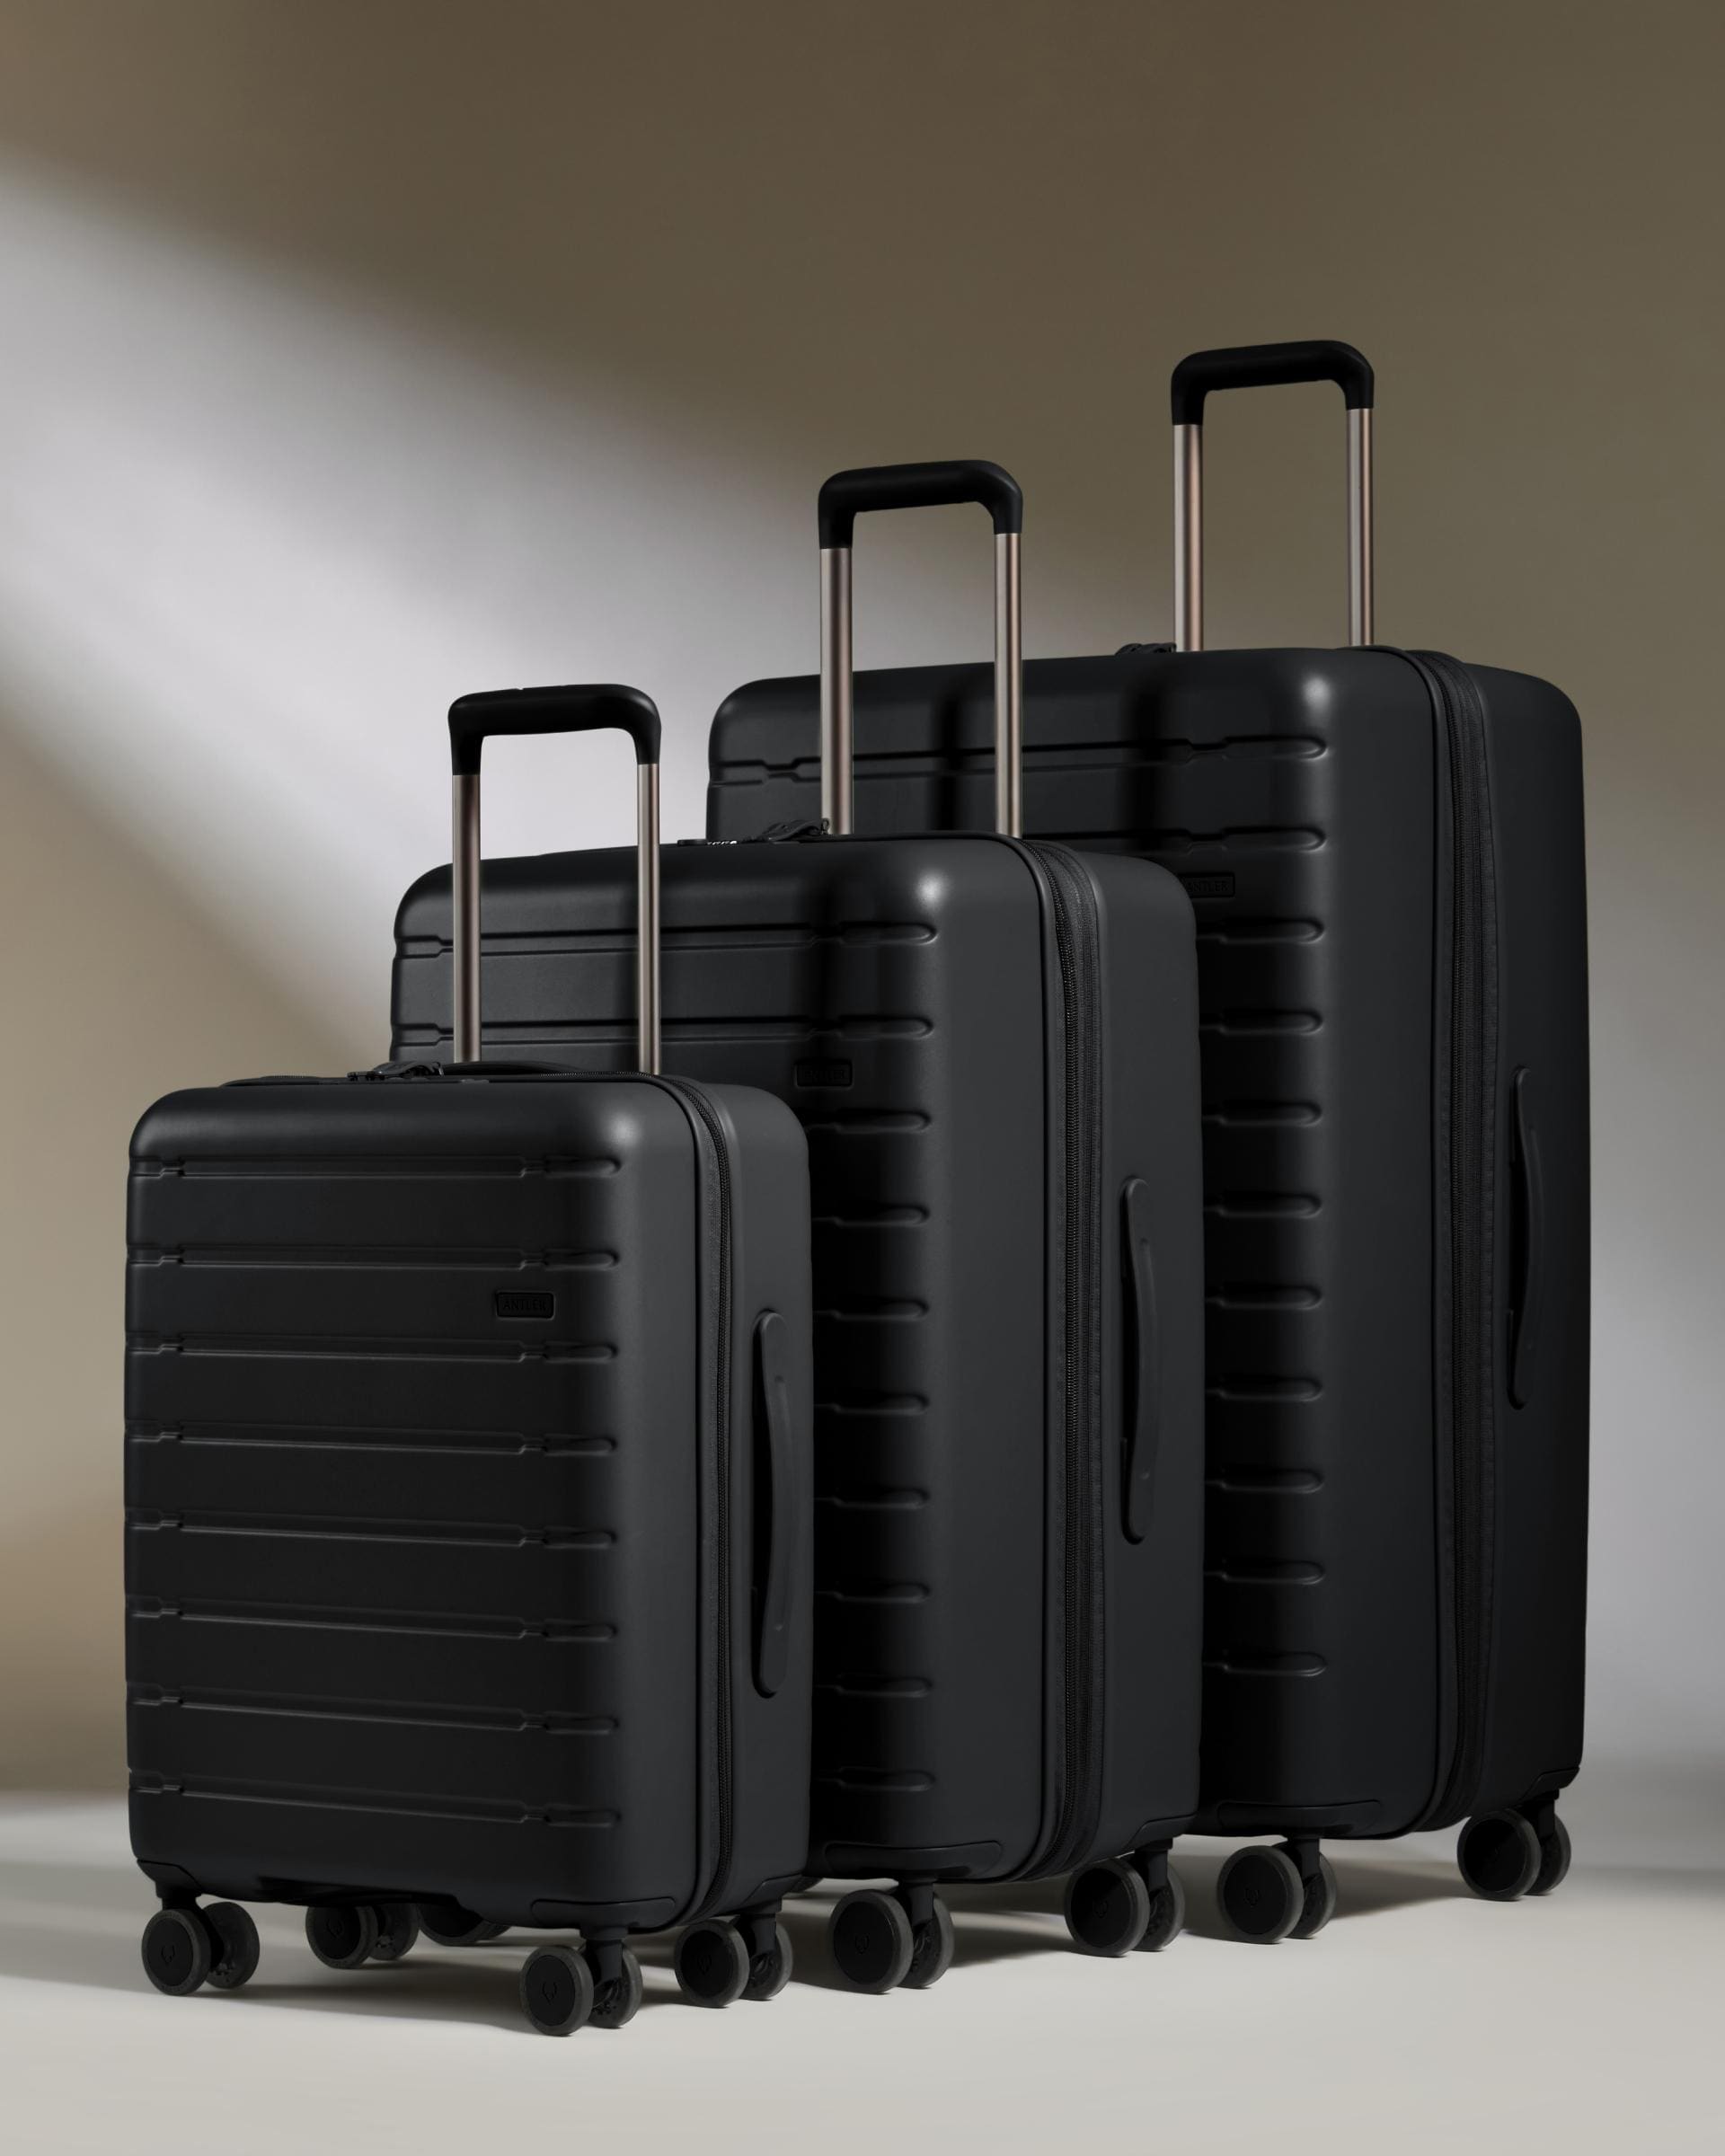 Antler Luggage -  Stamford 2.0 set in midnight black - Hard Suitcases Stamford 2.0 Set of 3 Suitcases Black | Hard Luggage | Antler UK